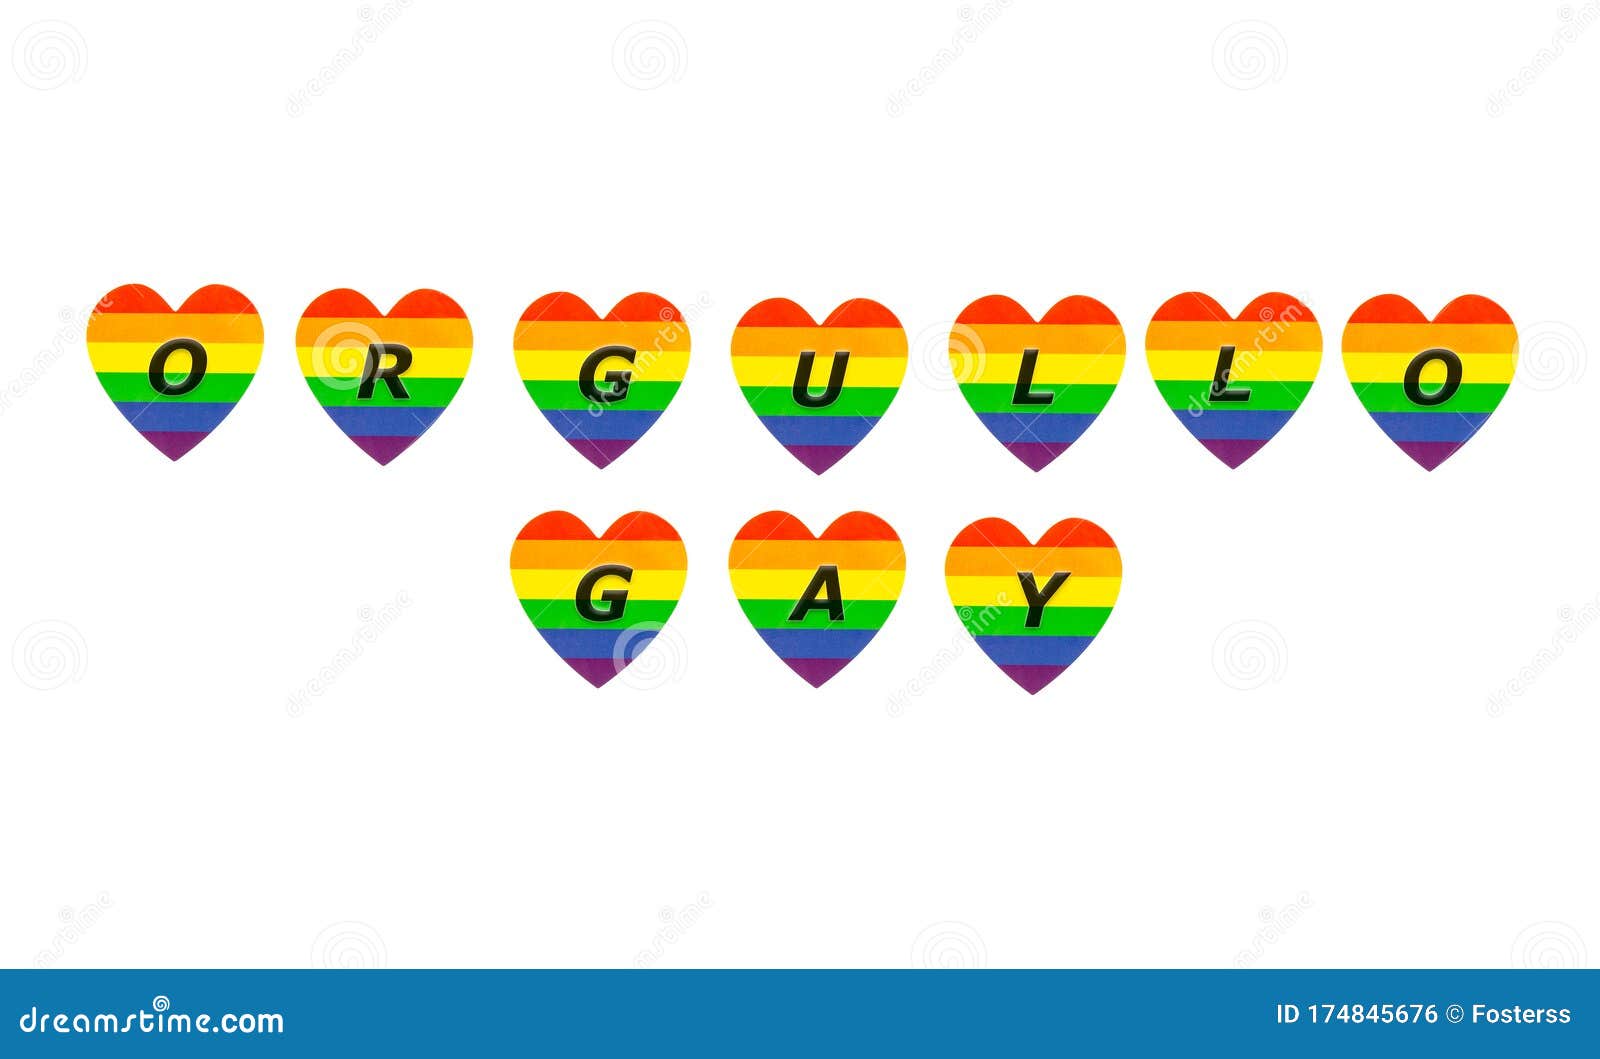 text orgullo gay in hearts, in english pride gay